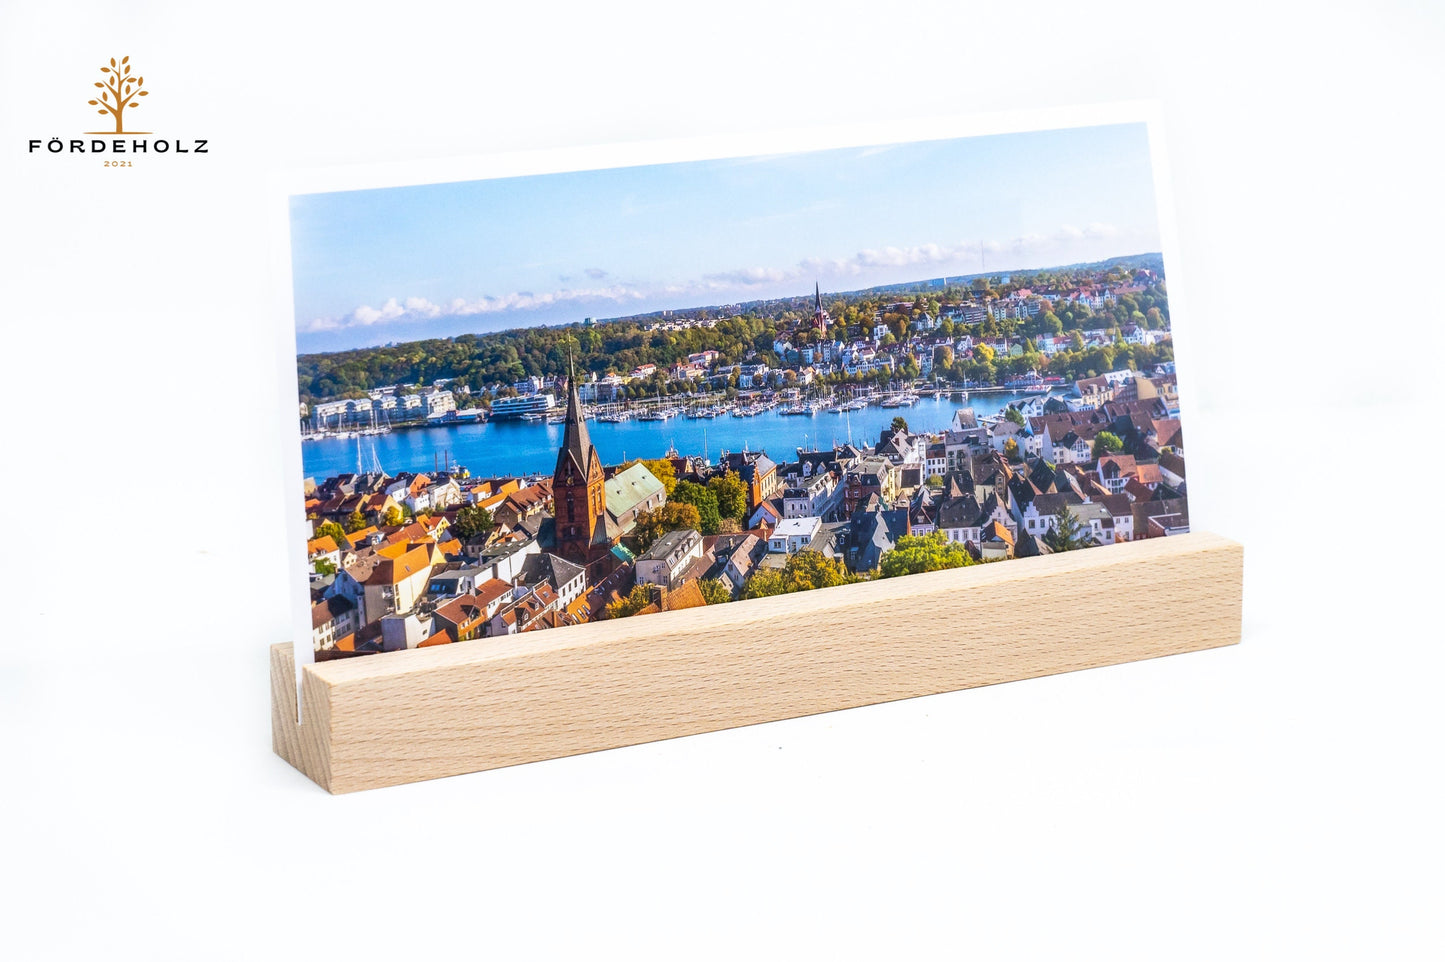 XL Foto- und Kartenhalter aus Holz, Holzkartenhalter, Kartenaufsteller, Buchenholz ohne Gravur